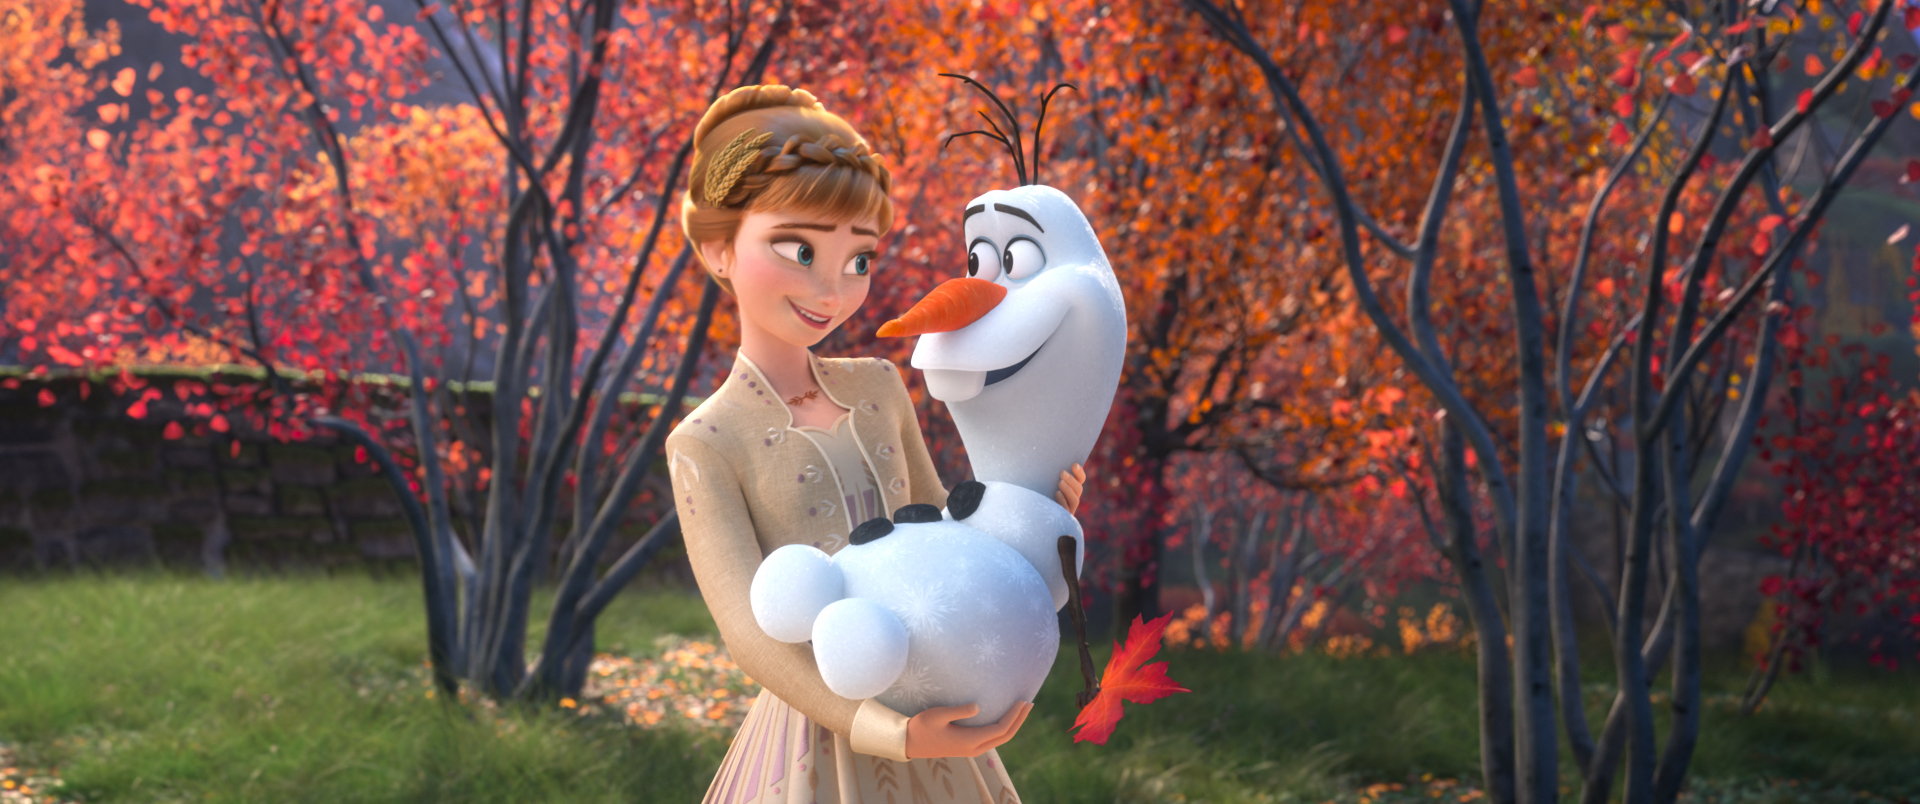 Cumplido Deudor Darse prisa Olaf de "Frozen" será el protagonista de una serie de cortos hechos en casa